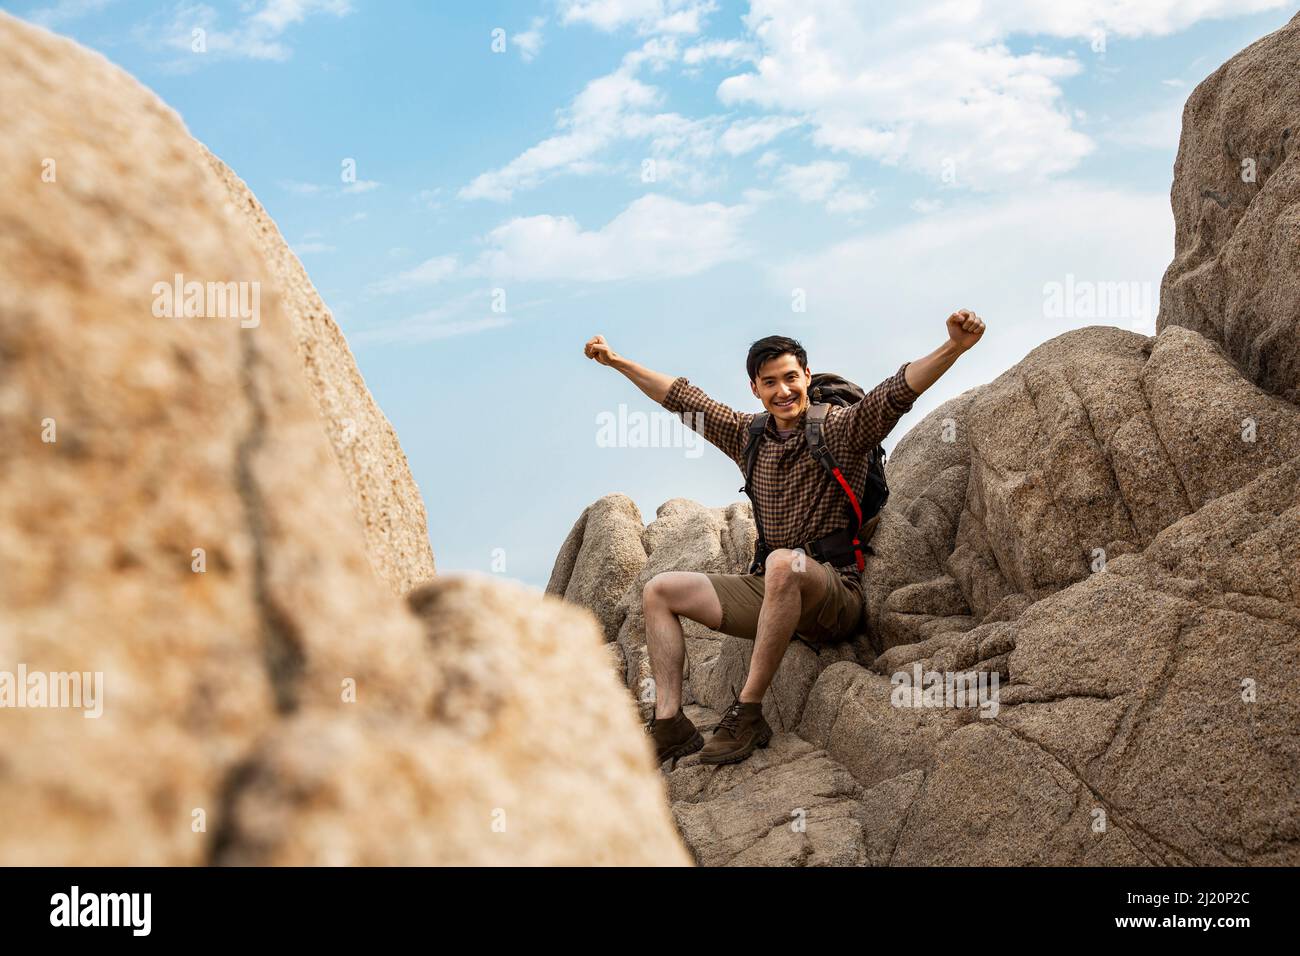 Un jeune routard qui applaudit avec des bras étirés sur des pics rocheux - photo de stock Banque D'Images